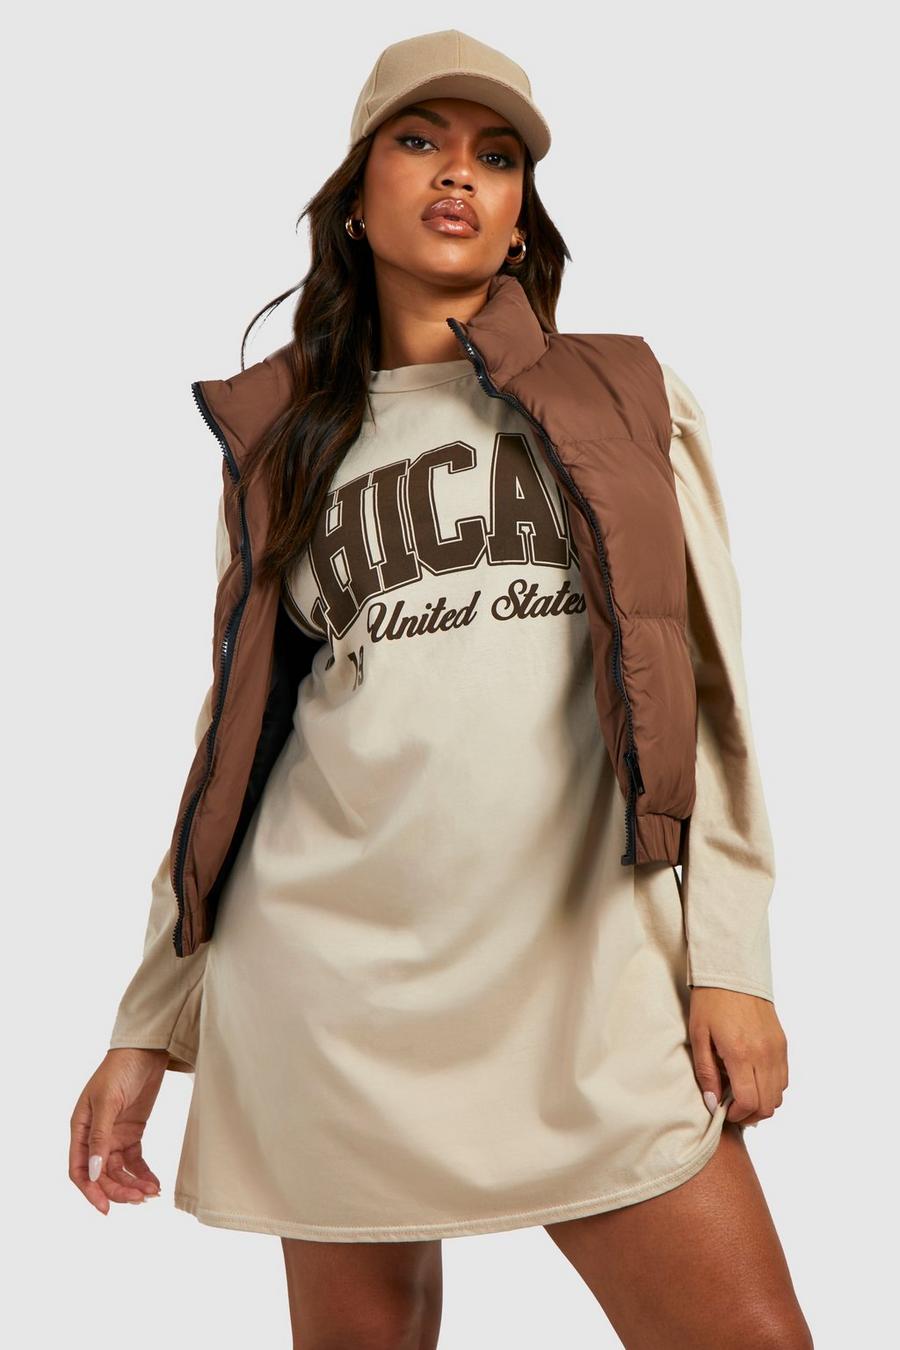 Vestito T-shirt Plus Size con stampa Chicago USA, Stone beige